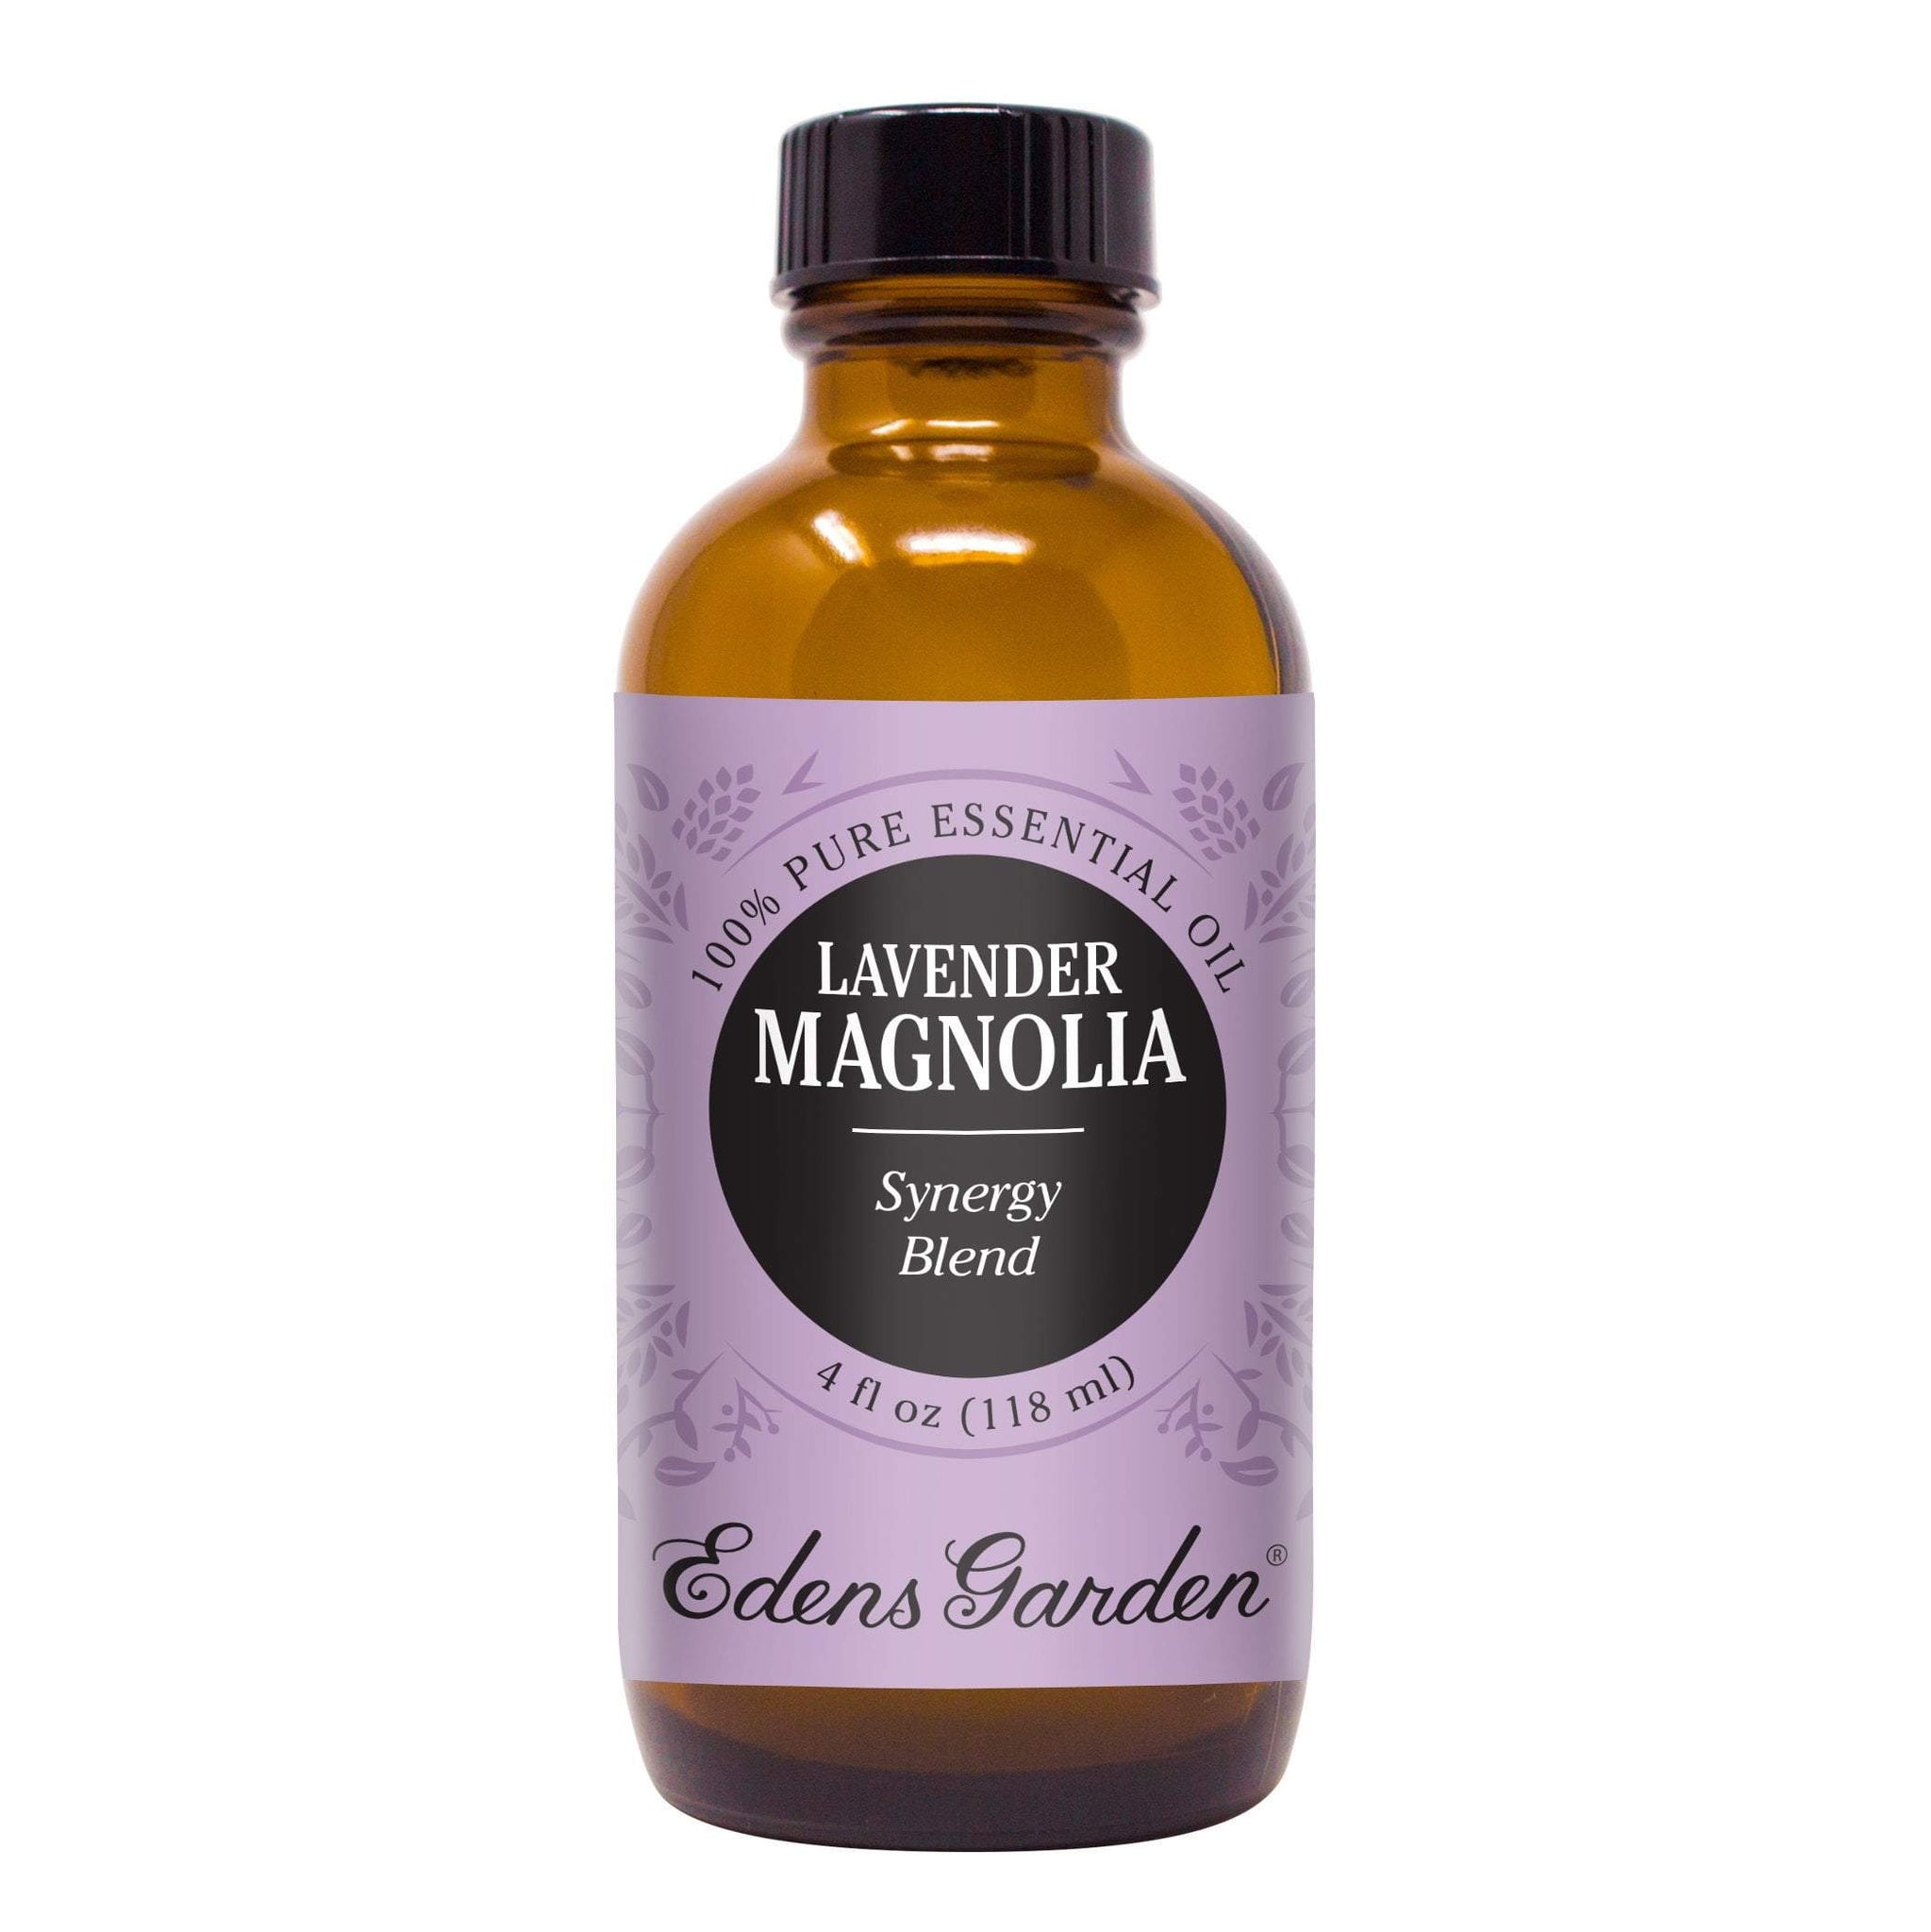 Magnolia Essential Oil